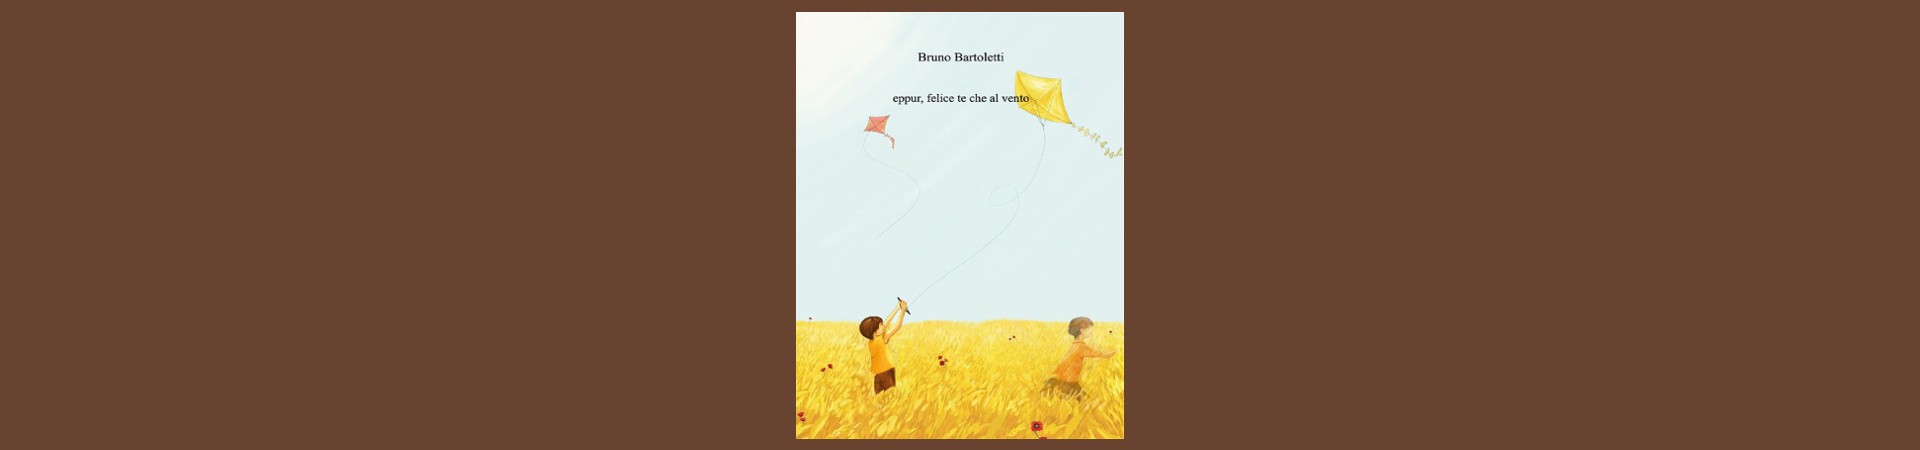 Visit-Sogliano-al-Rubicone-Eventi-presentazione-libro-eppur-felice-te-che-il-vento-BANNER